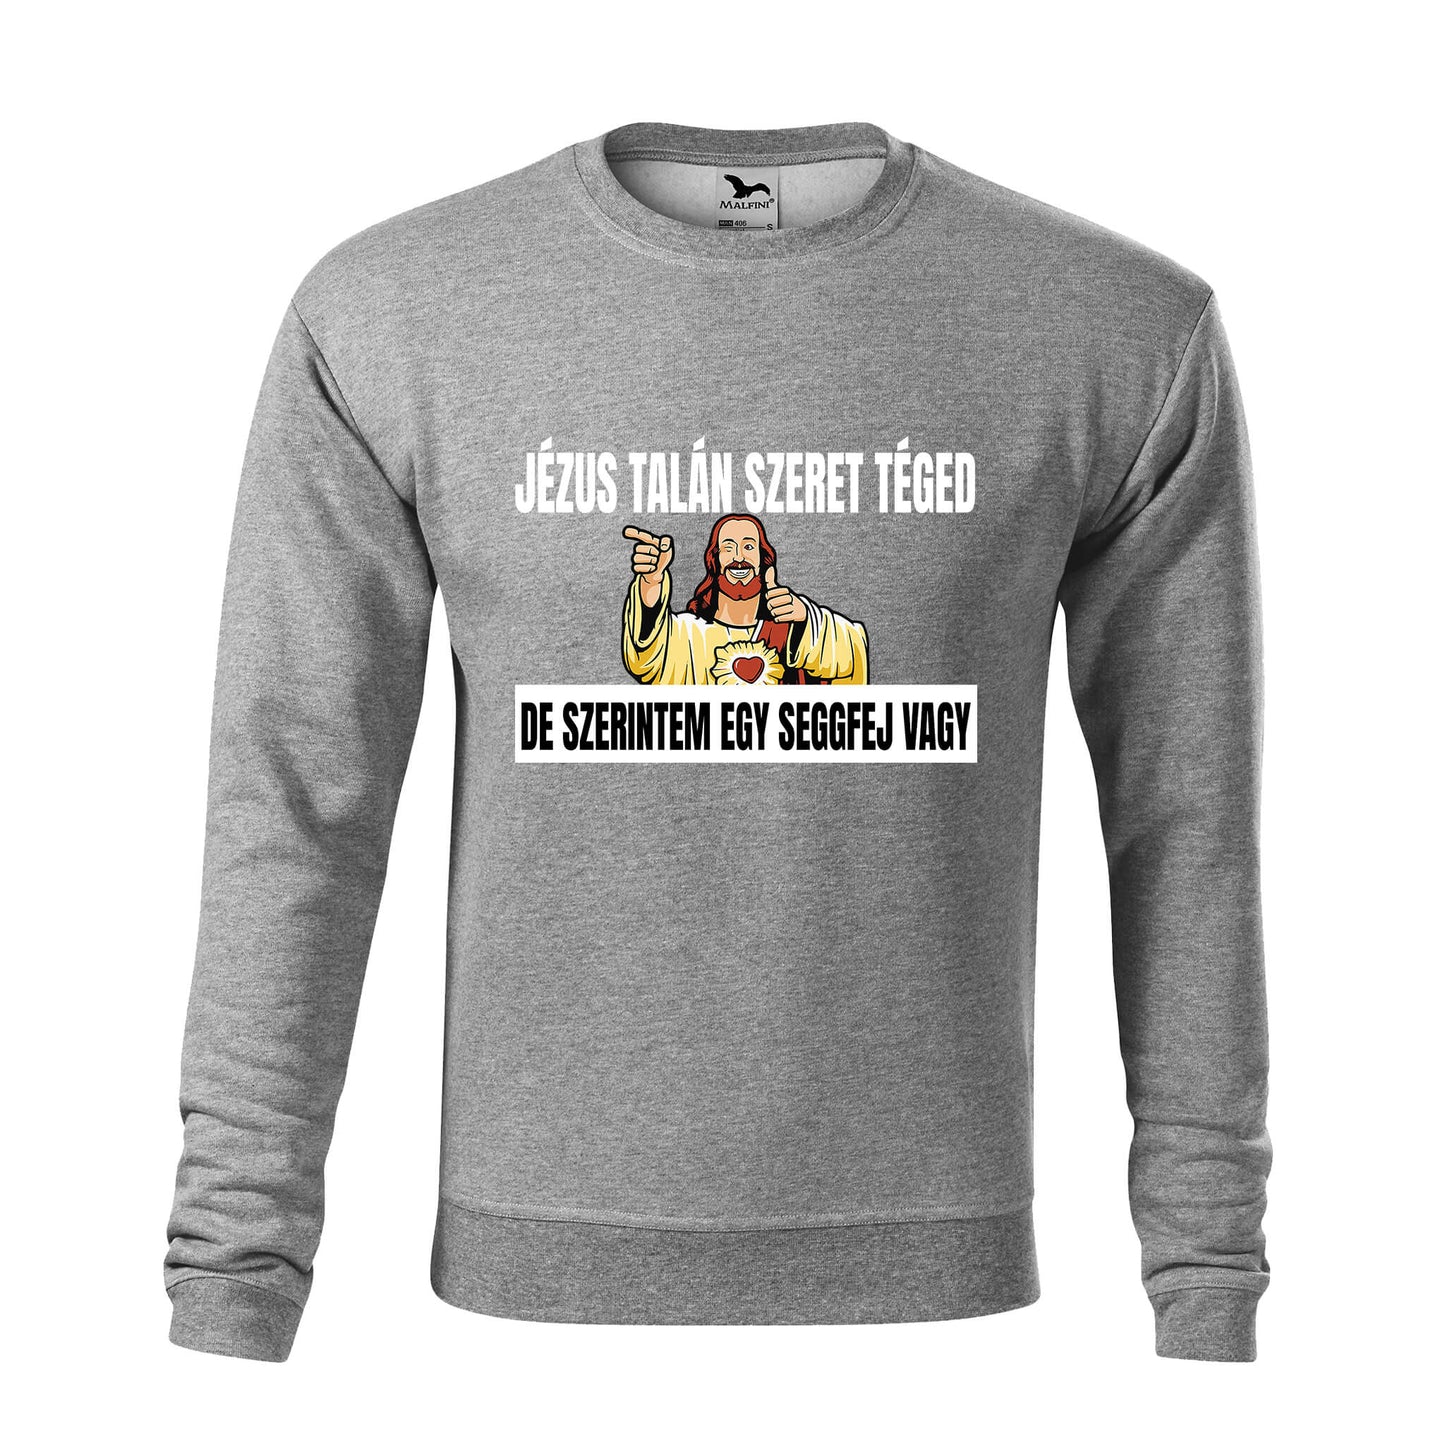 Jezus talan szeret teged sweatshirt - rvdesignprint